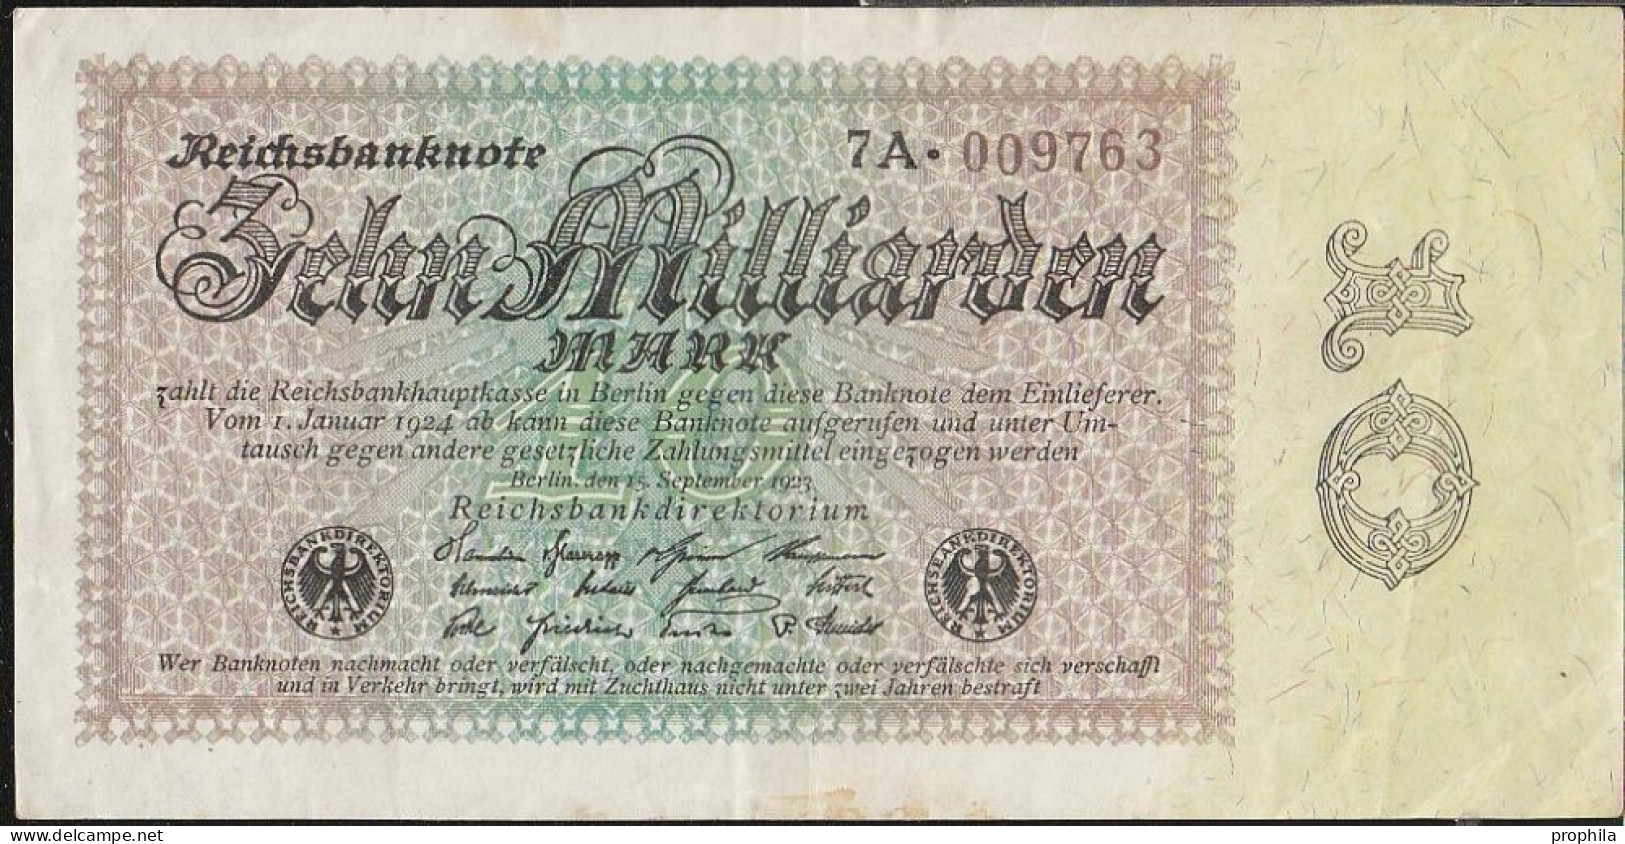 Deutsches Reich Rosenbg: 113c Wasserzeichen Disteln Stark Gebraucht (IV) 1923 10 Milliarden Mark - 10 Milliarden Mark